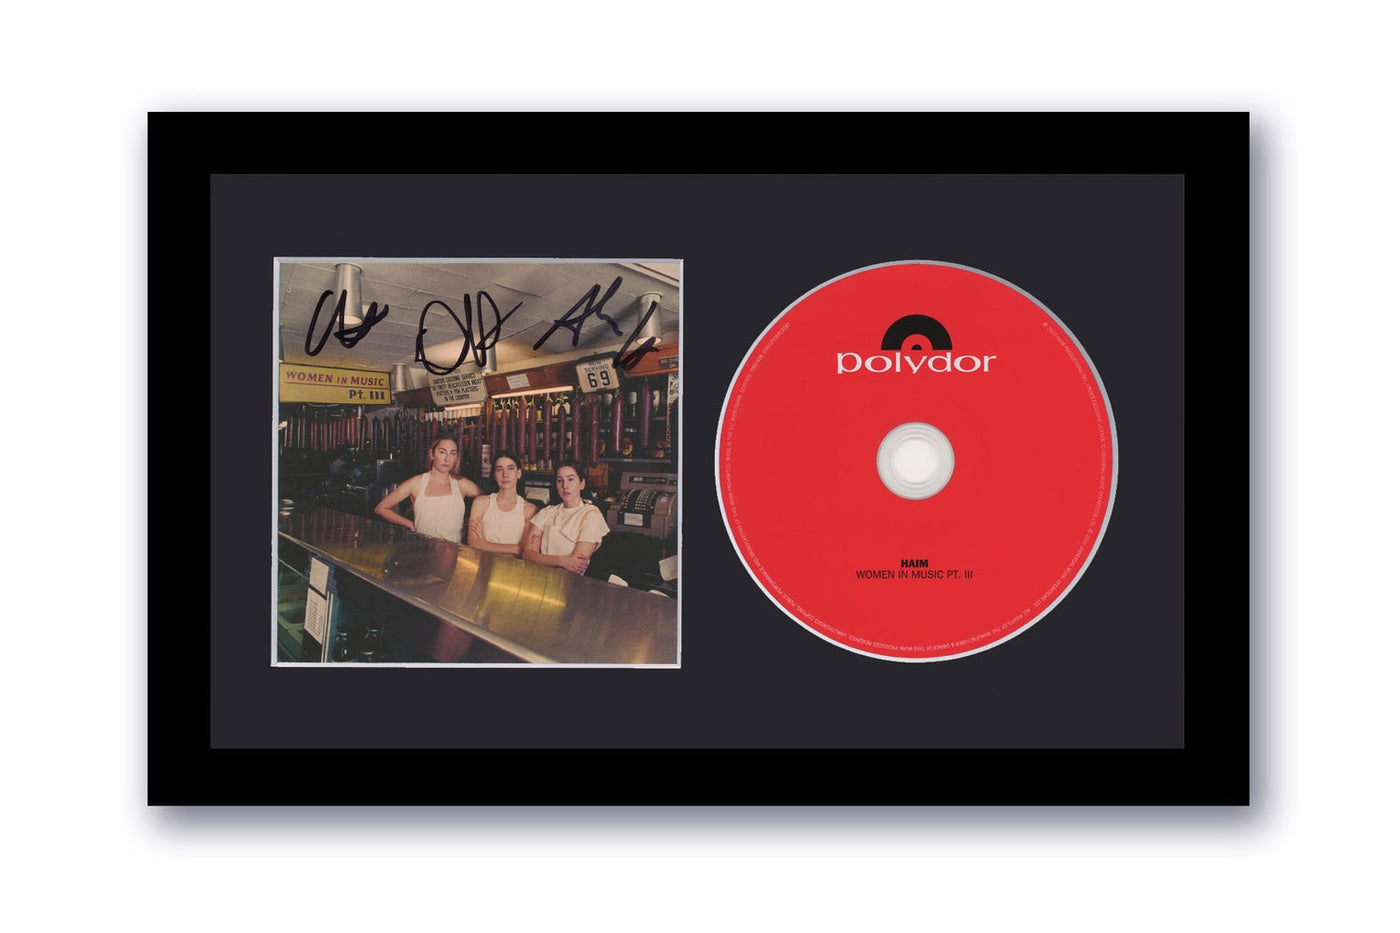 Haim Autographed Signed 7x12 Custom Framed CD Women In Music Pt. III ACOA